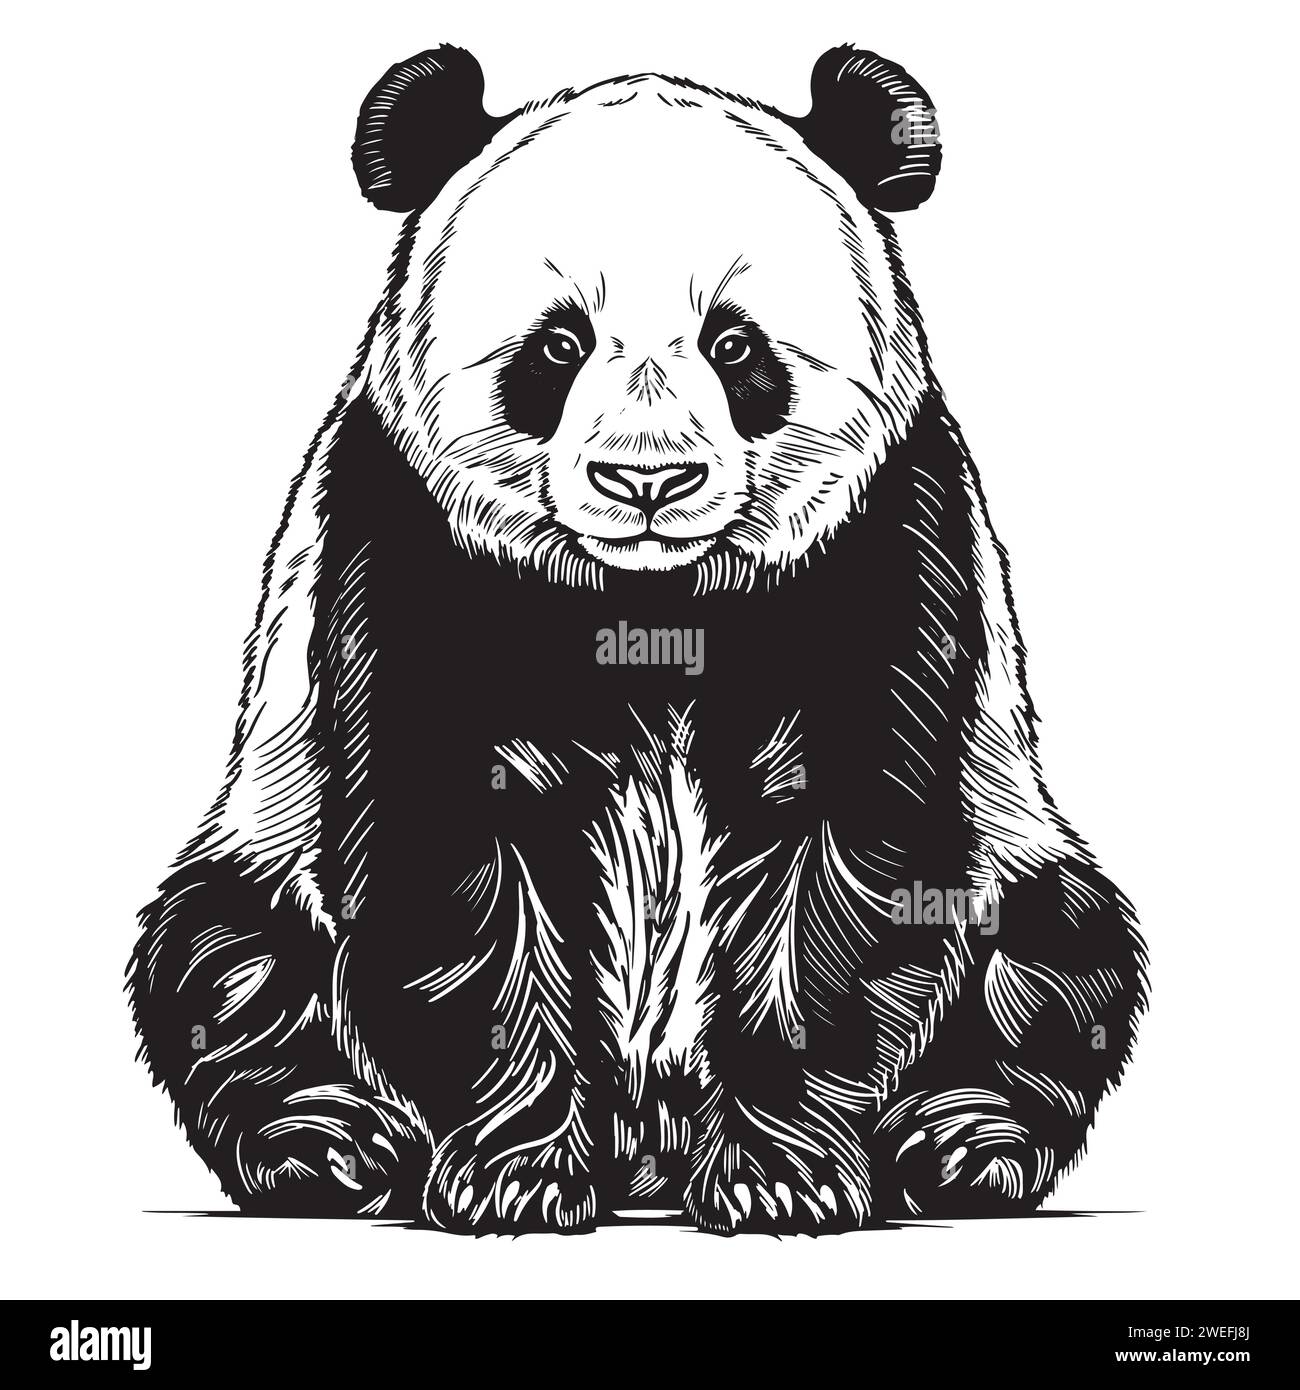 Vektor-realistische Skizze des niedlichen sitzenden Pandas in voller Länge, Hand gezeichnete Illustration Stock Vektor